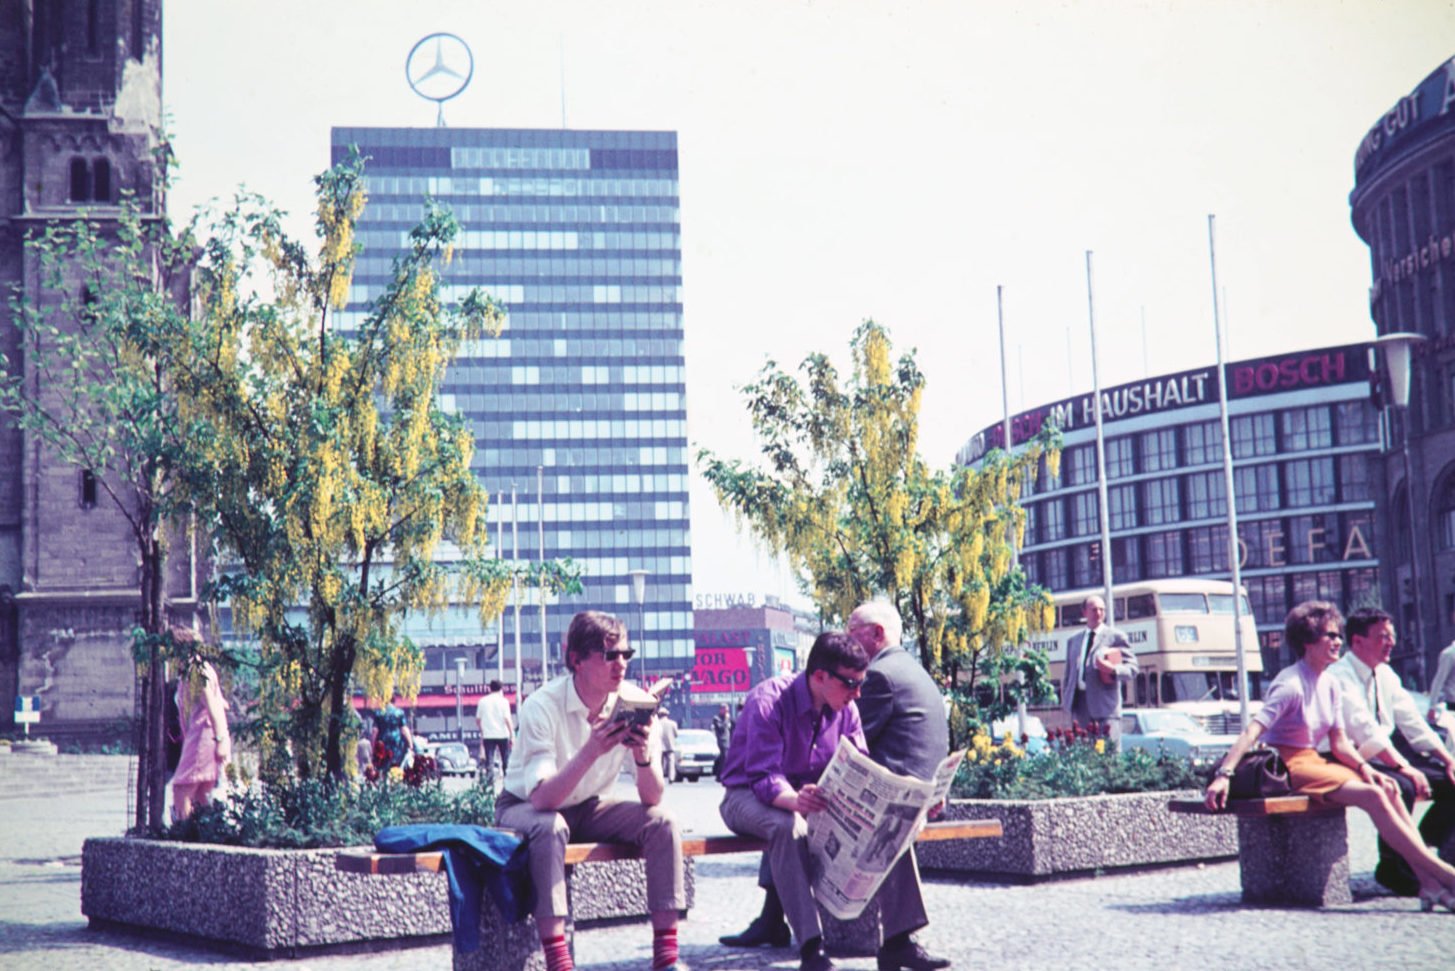 Das Herz von West-Berlin schlug rund um das Europa Center, Aufnahme aus den 1970er-Jahren. Foto: Imago/Serienlicht